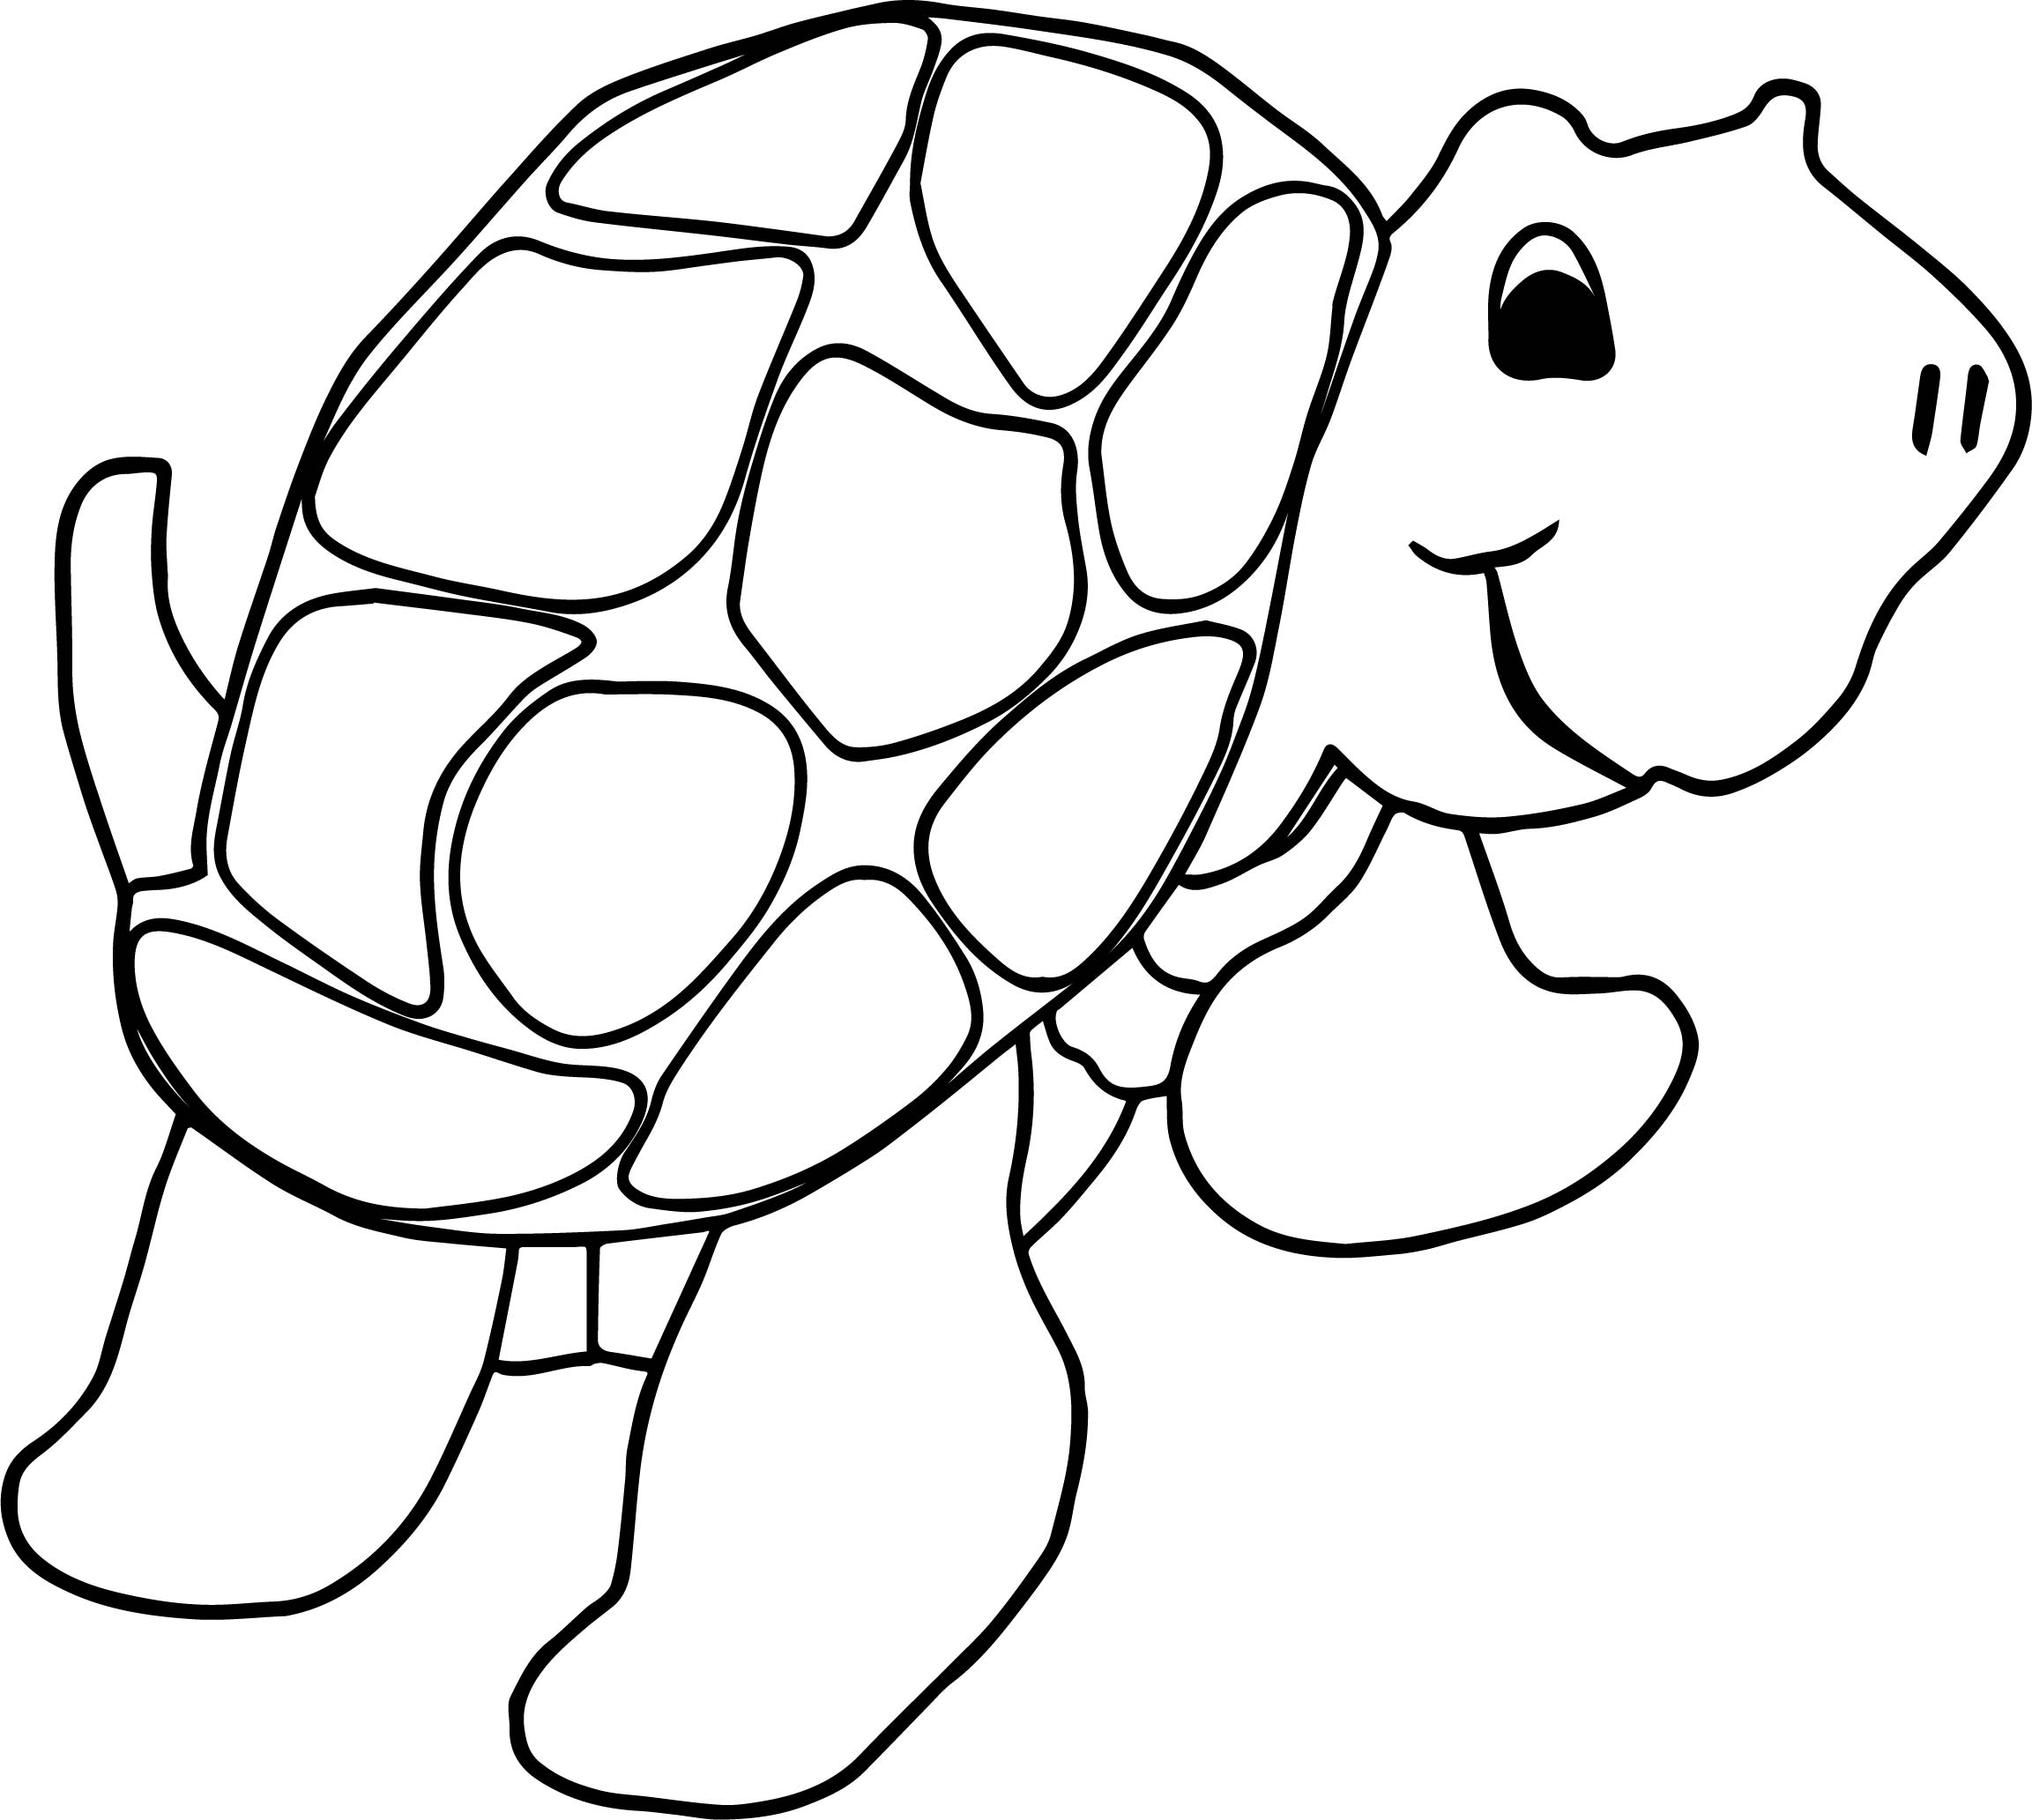 Раскраска для детей 3 лет черепаха